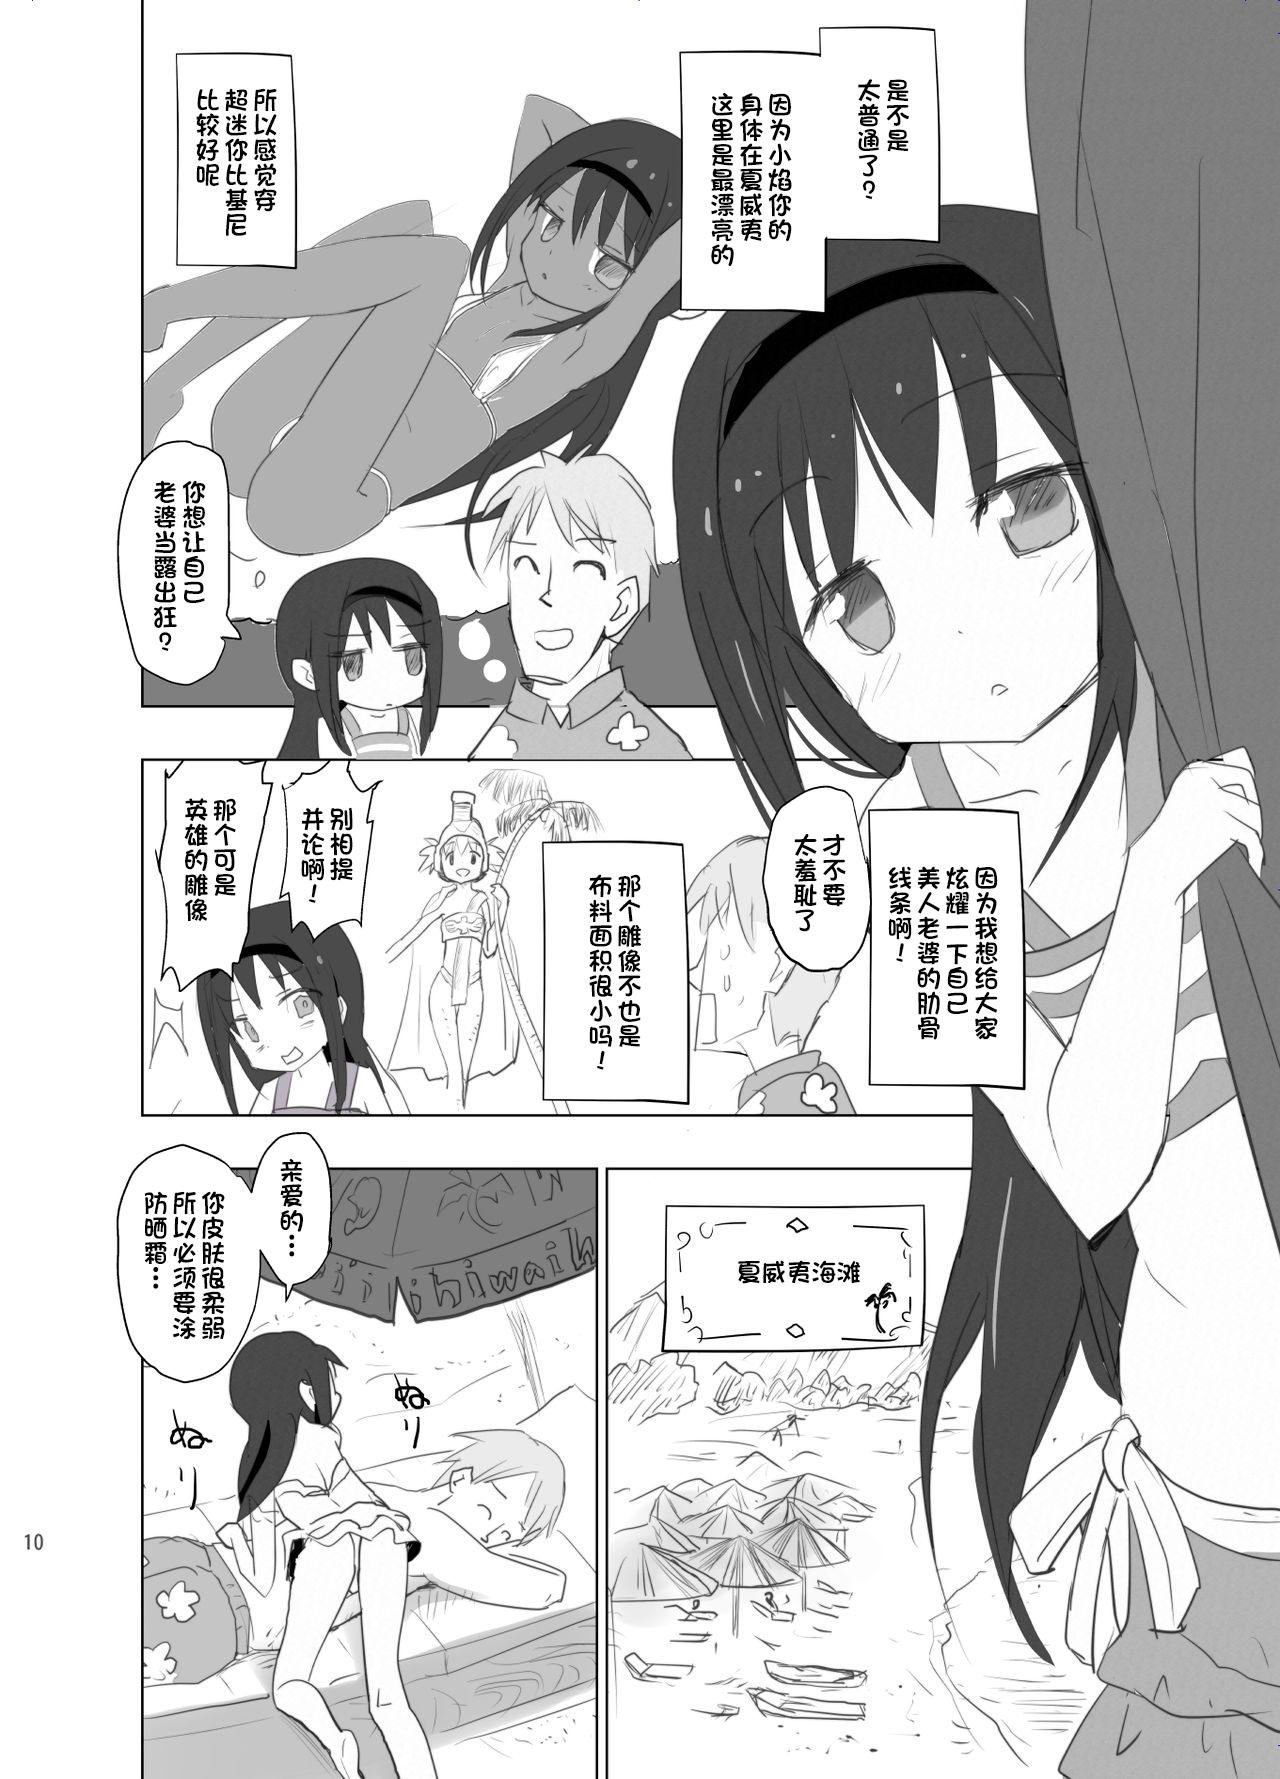 Pussyfucking Anata no Koto ga Daisuki na Homura-chan to Iku Shuudan Roshutsu Shinkon Ryokou Hawaii!! - Puella magi madoka magica Negra - Page 10